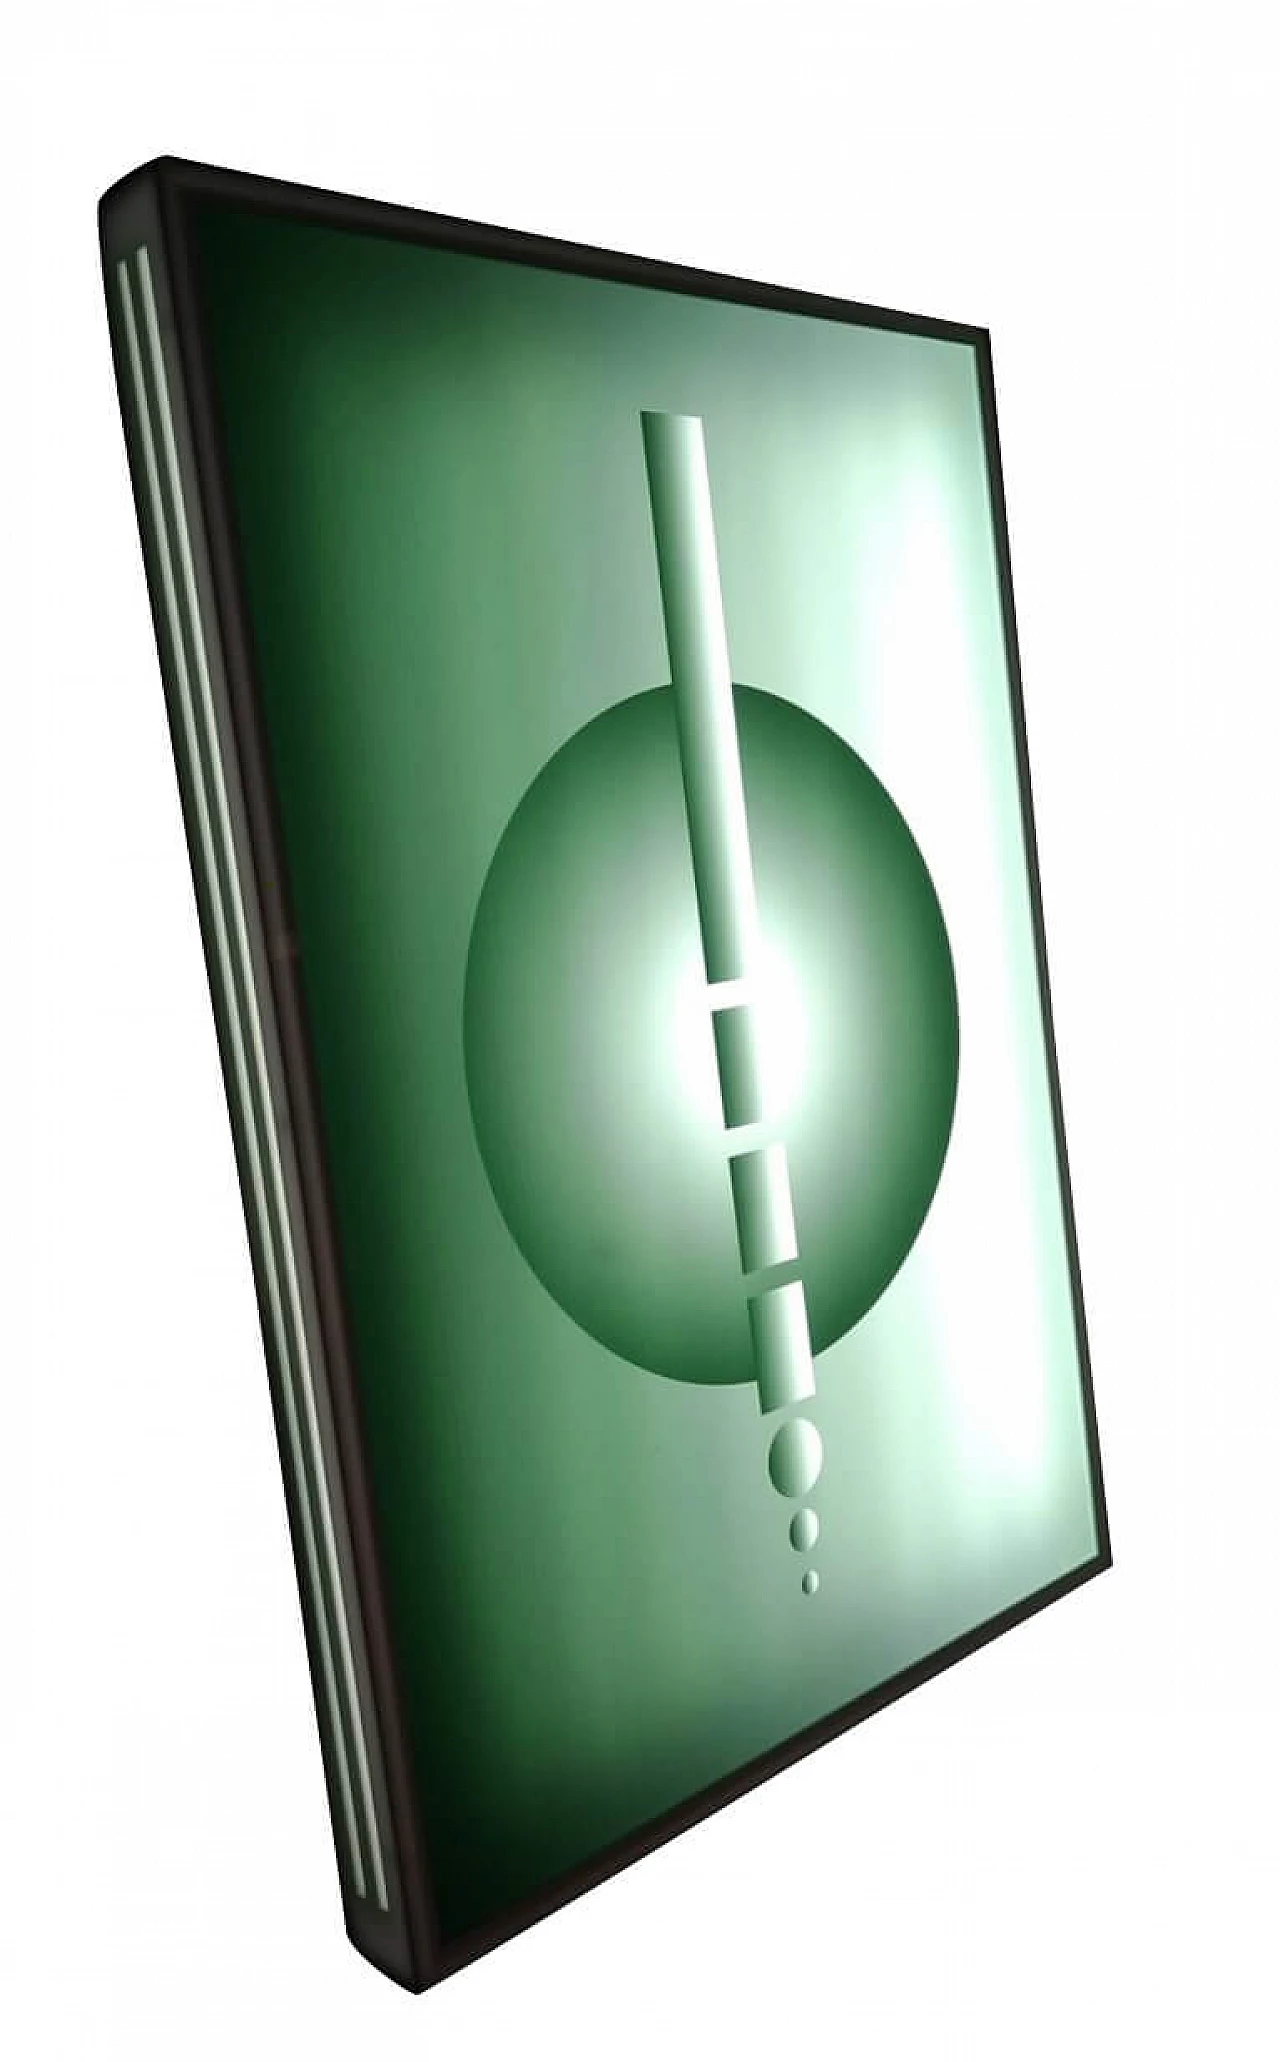 Green plexiglass wall lamp, 2000 1112091